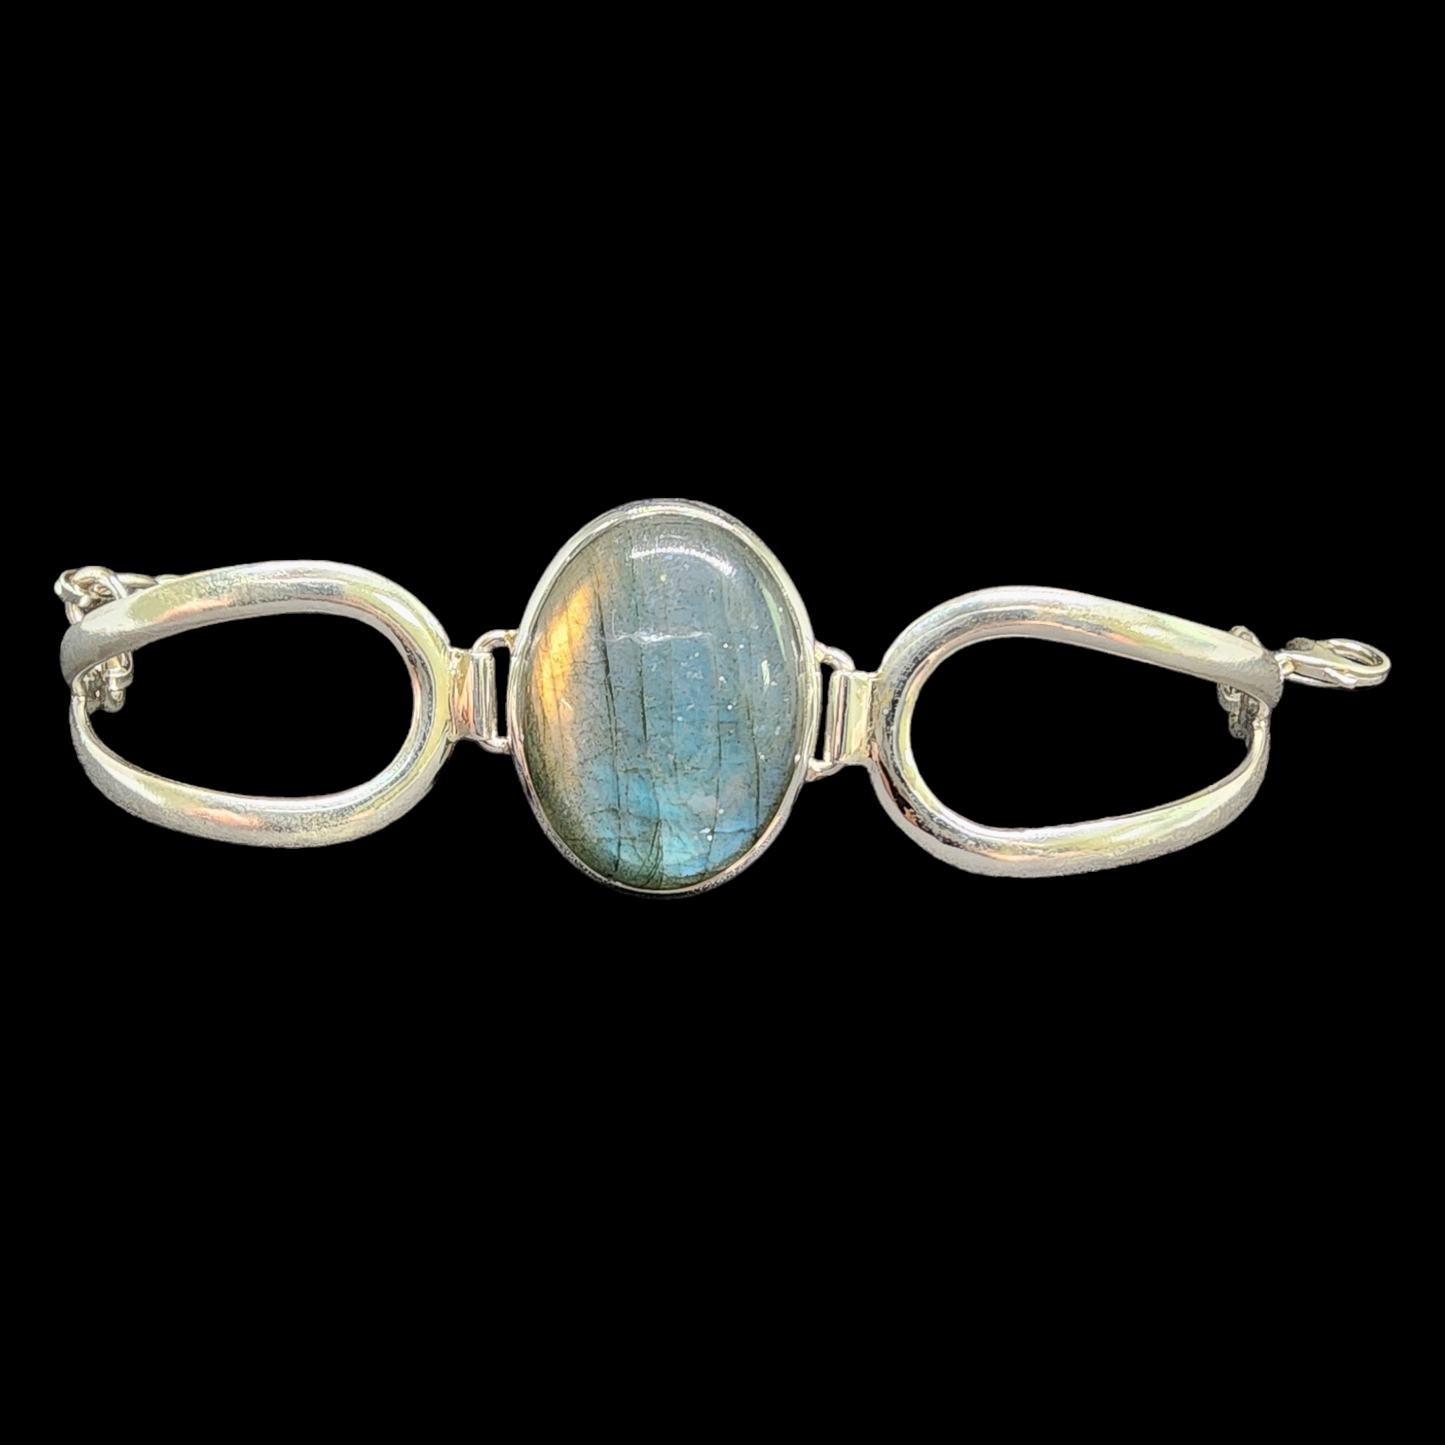 Labradorite Adjustable Sterling Silver Bracelet